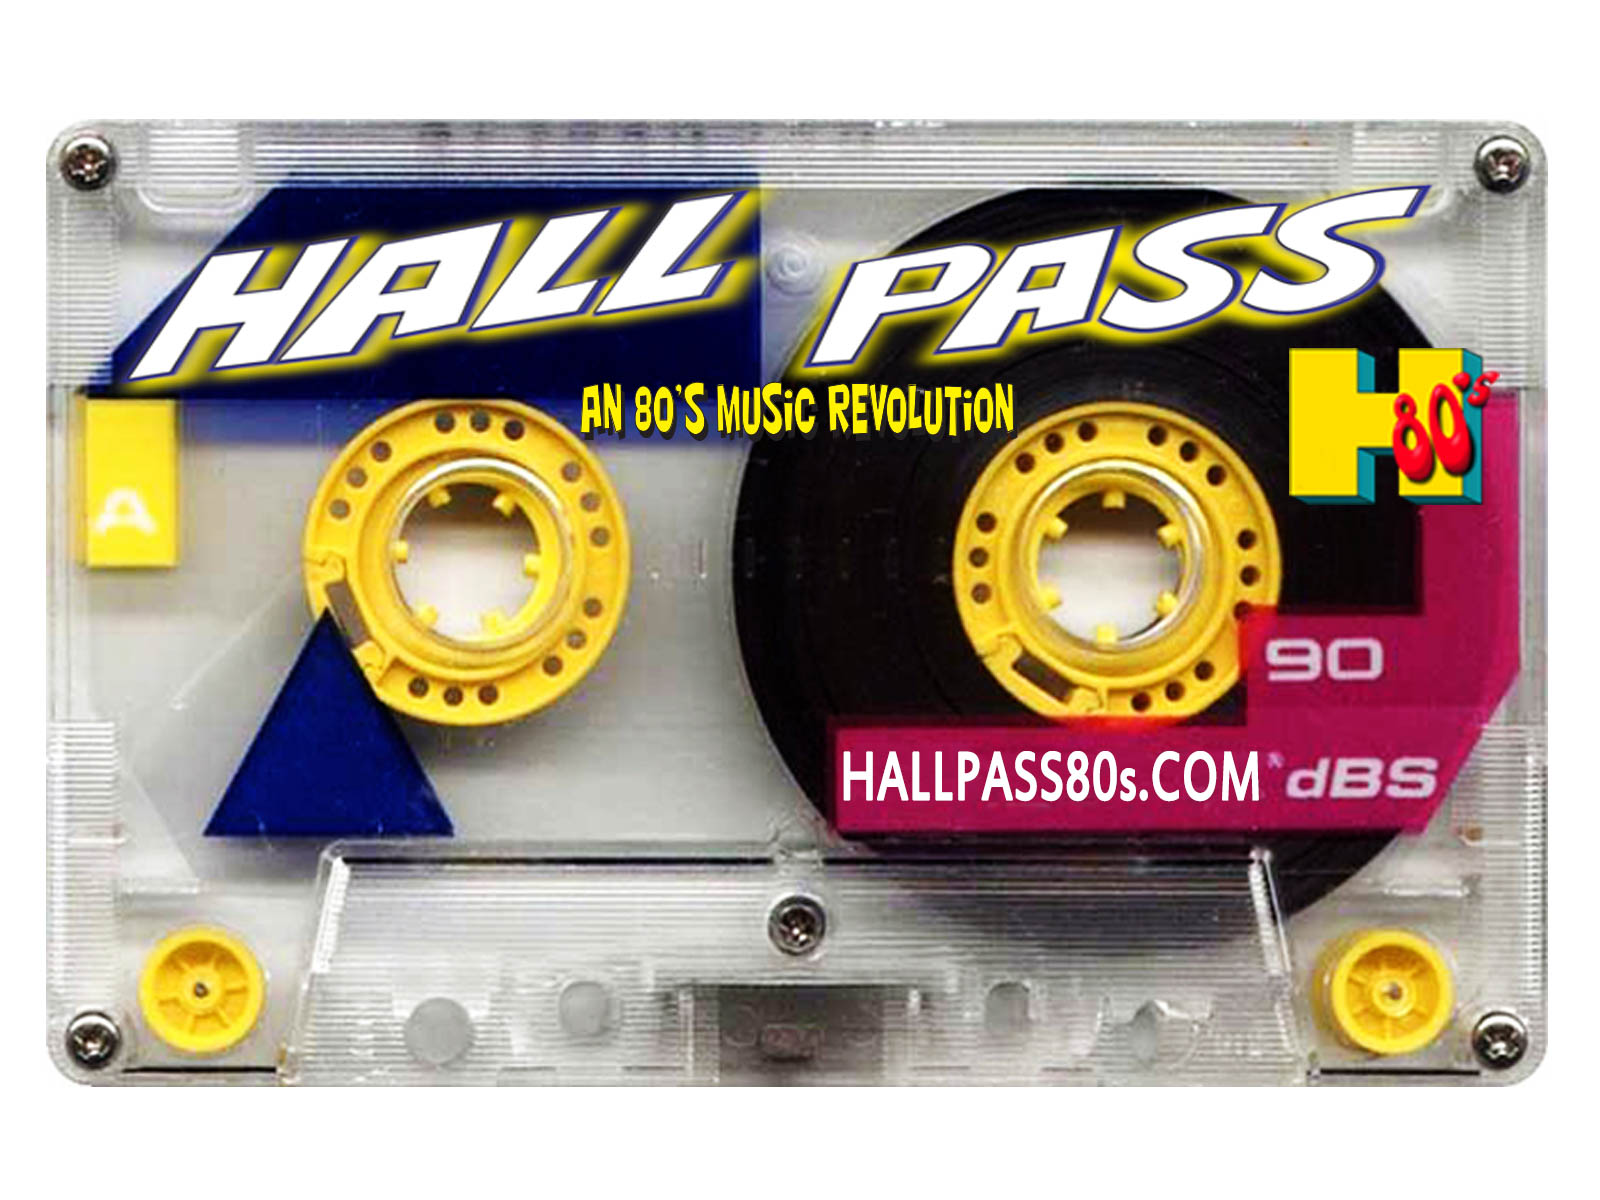 Black_HallPass_Cassette.jpg